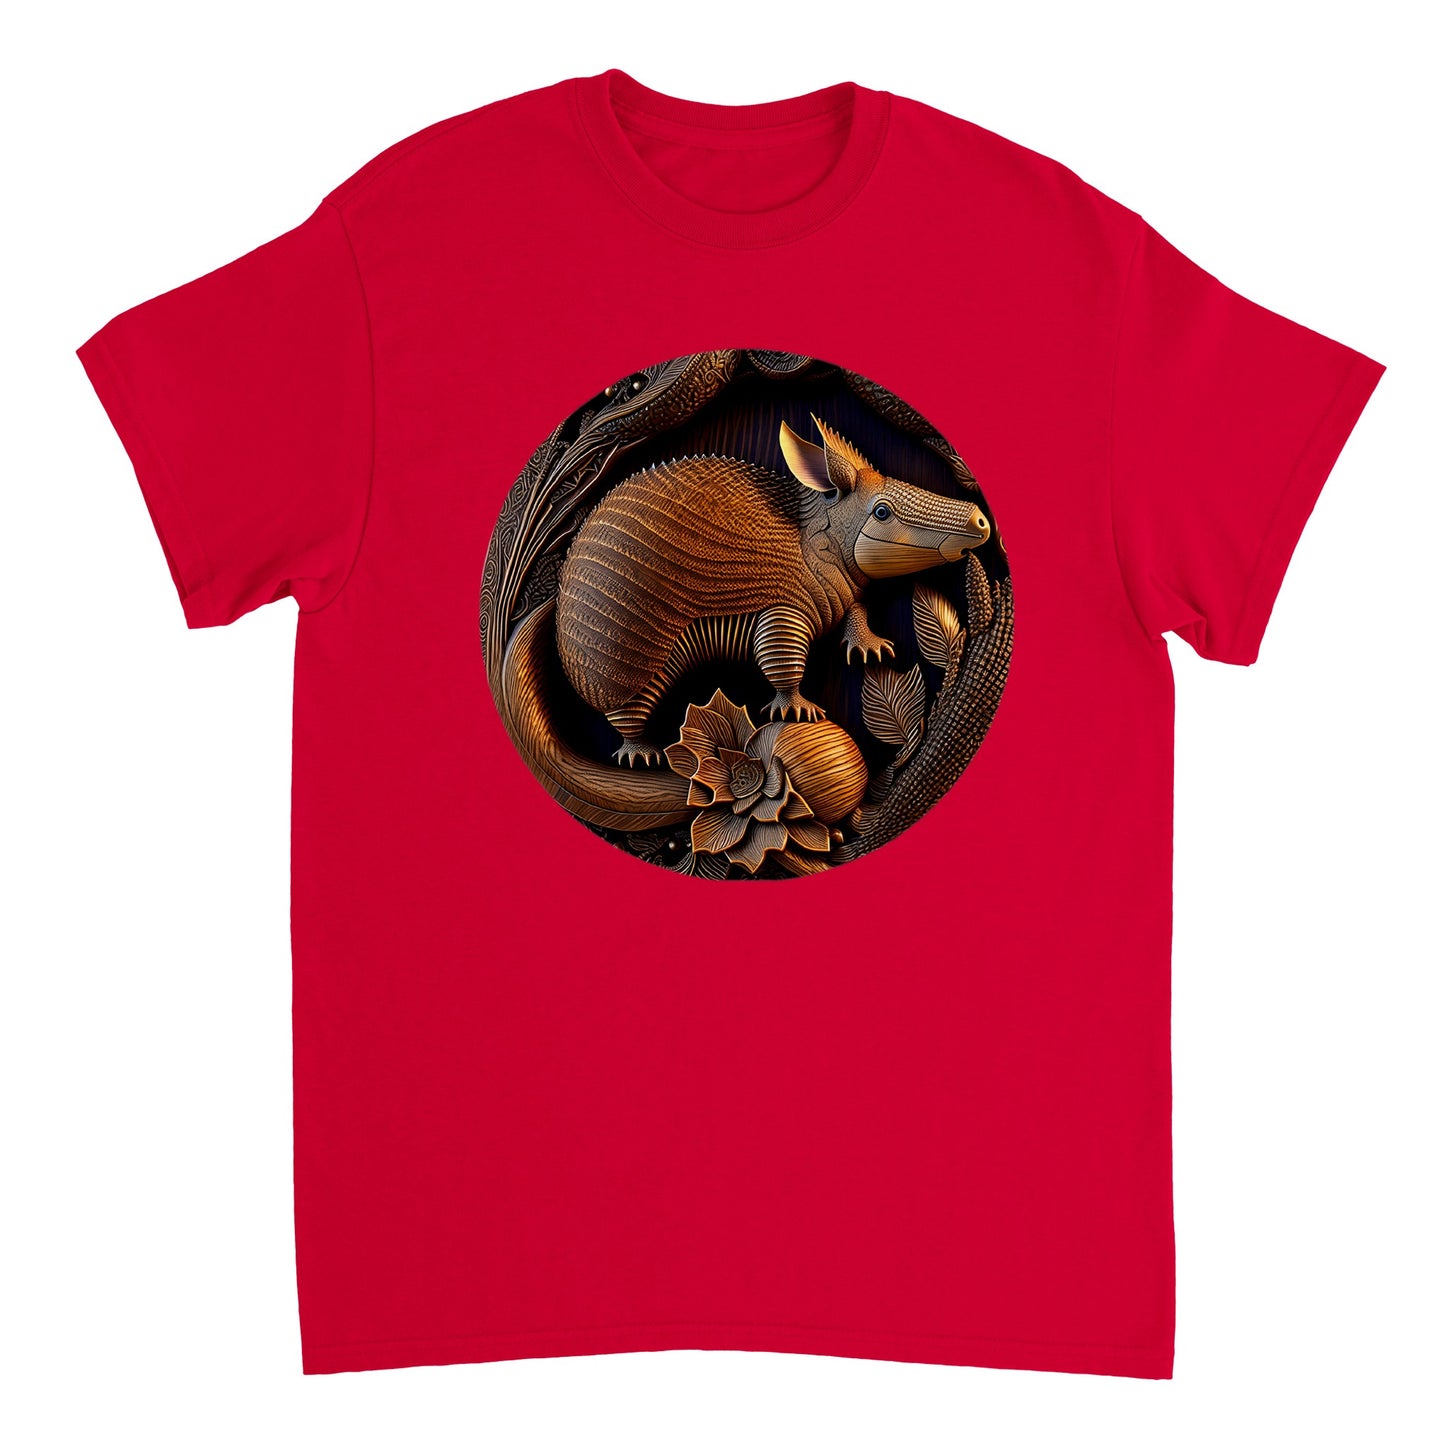 3D Wooden Animal Art - Heavyweight Unisex Crewneck T-shirt 25